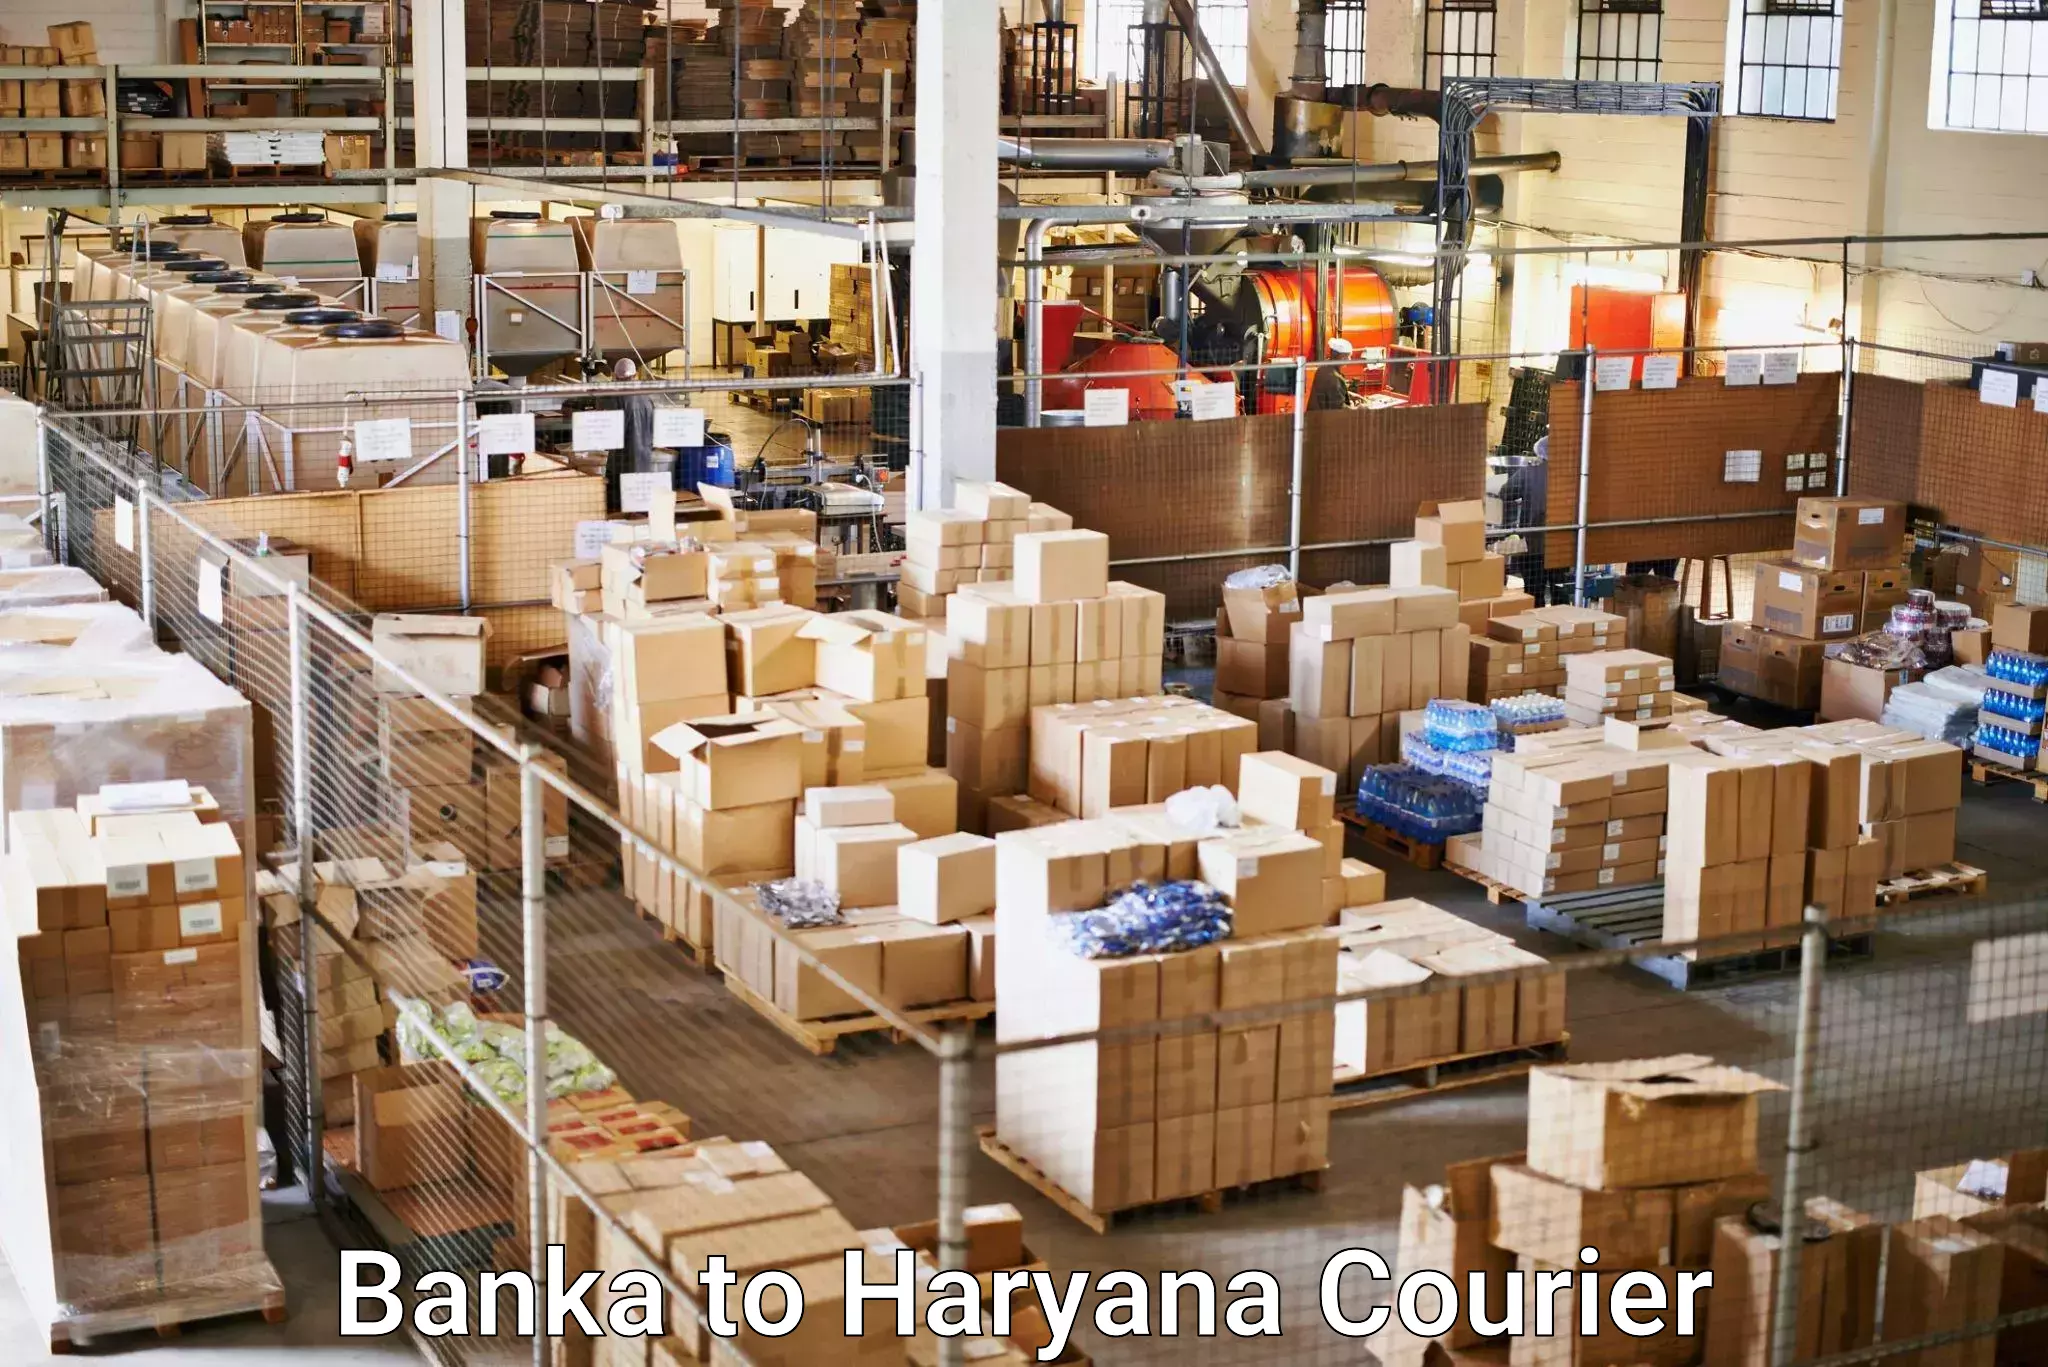 Global logistics network Banka to NCR Haryana